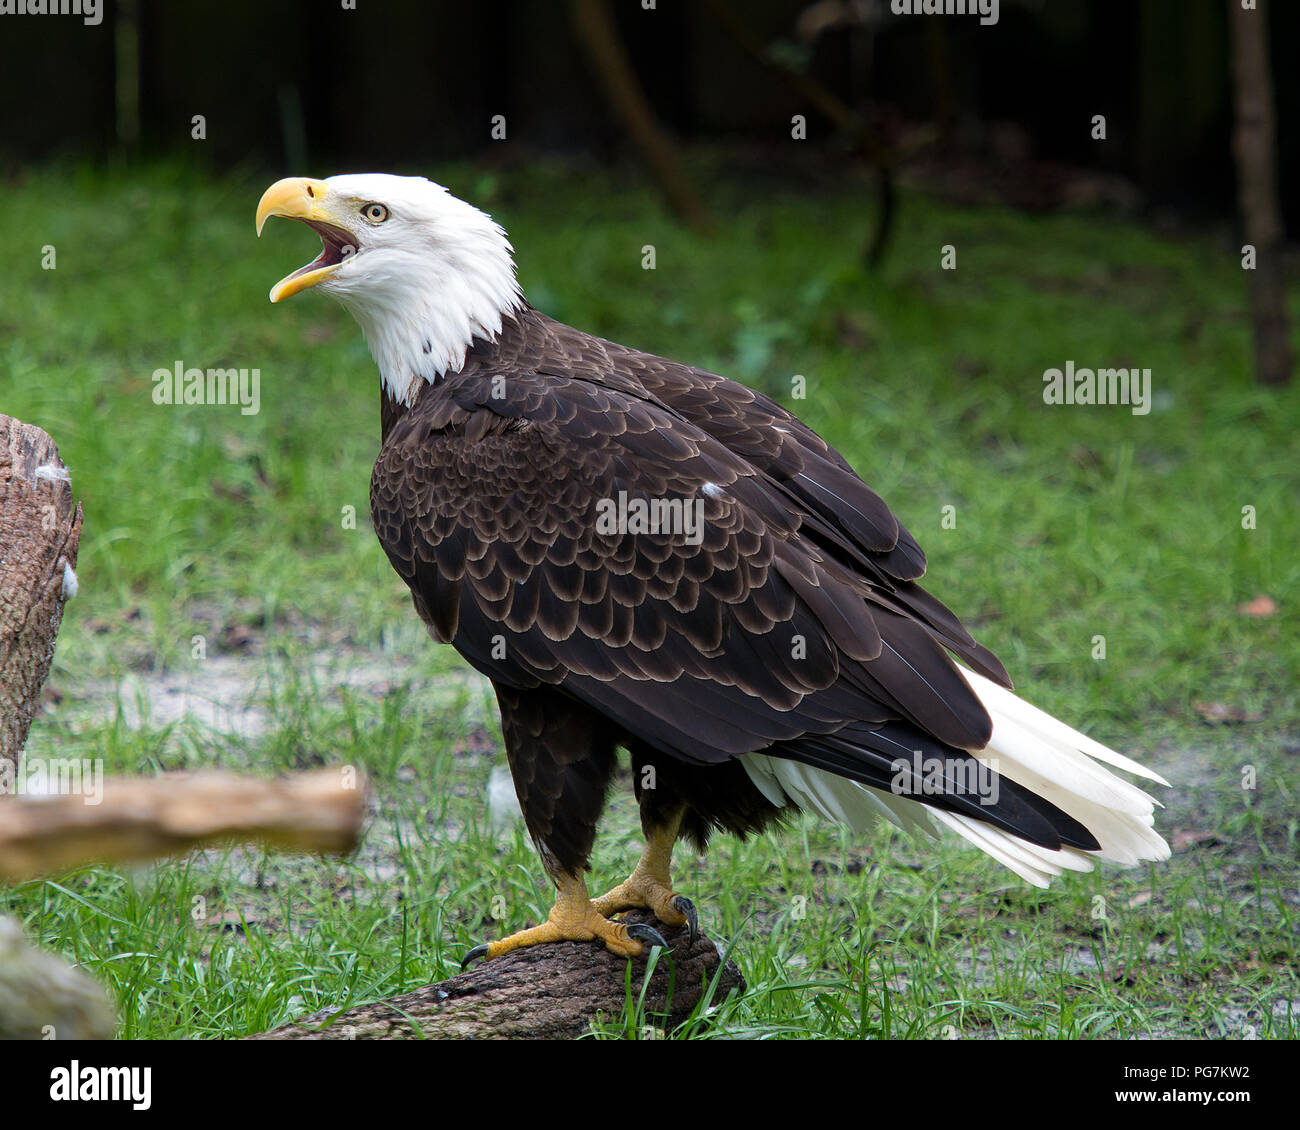 El águila calva de cerca de aves, gritando, con un fondo de follaje y  mostrar el cuerpo, de la cabeza, ojos, pico, garras, plumaje en su entorno  y el medio ambiente Fotografía